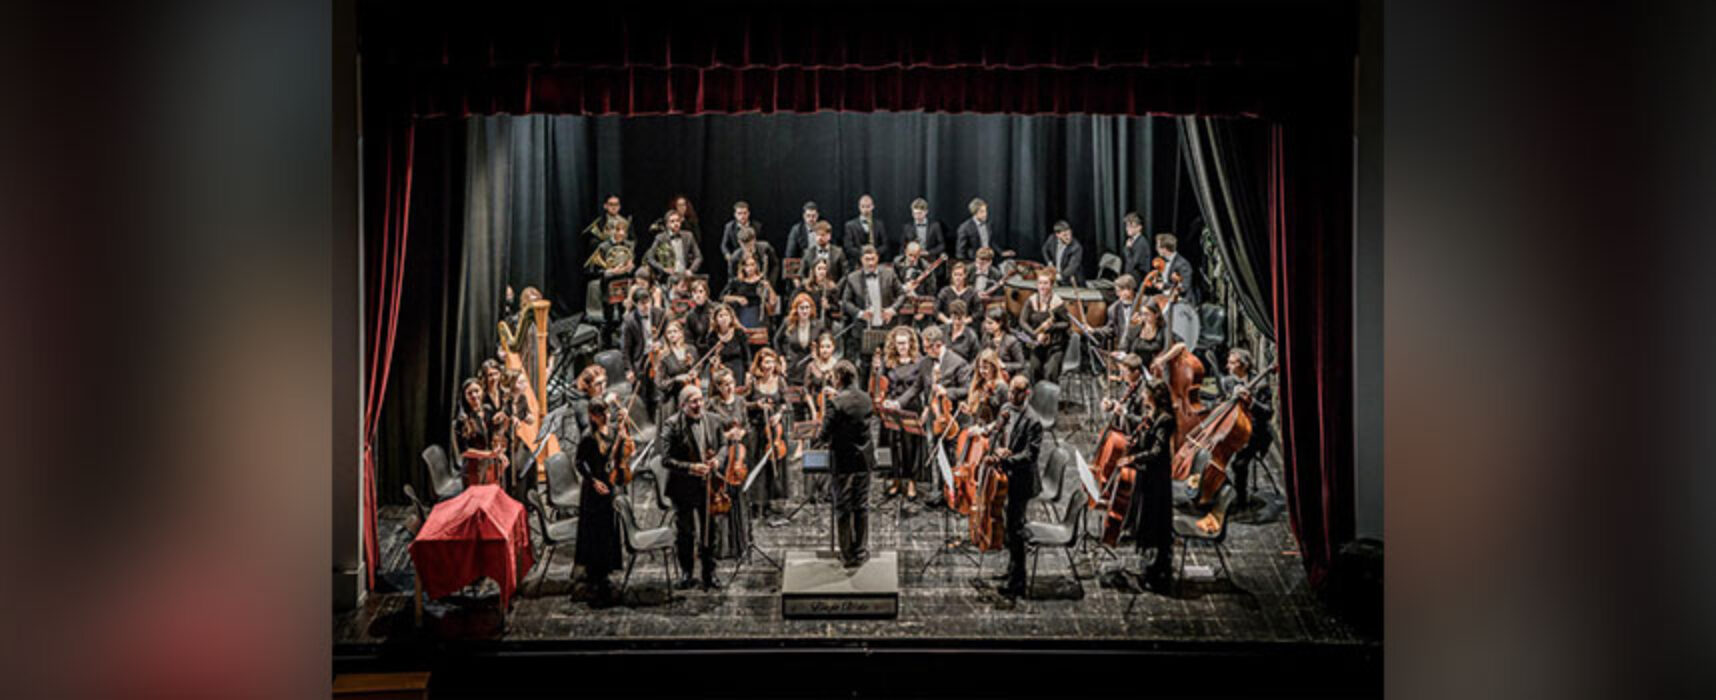 Al Teatro Politeama di Bisceglie replica per lo spettacolo “La Traviata”